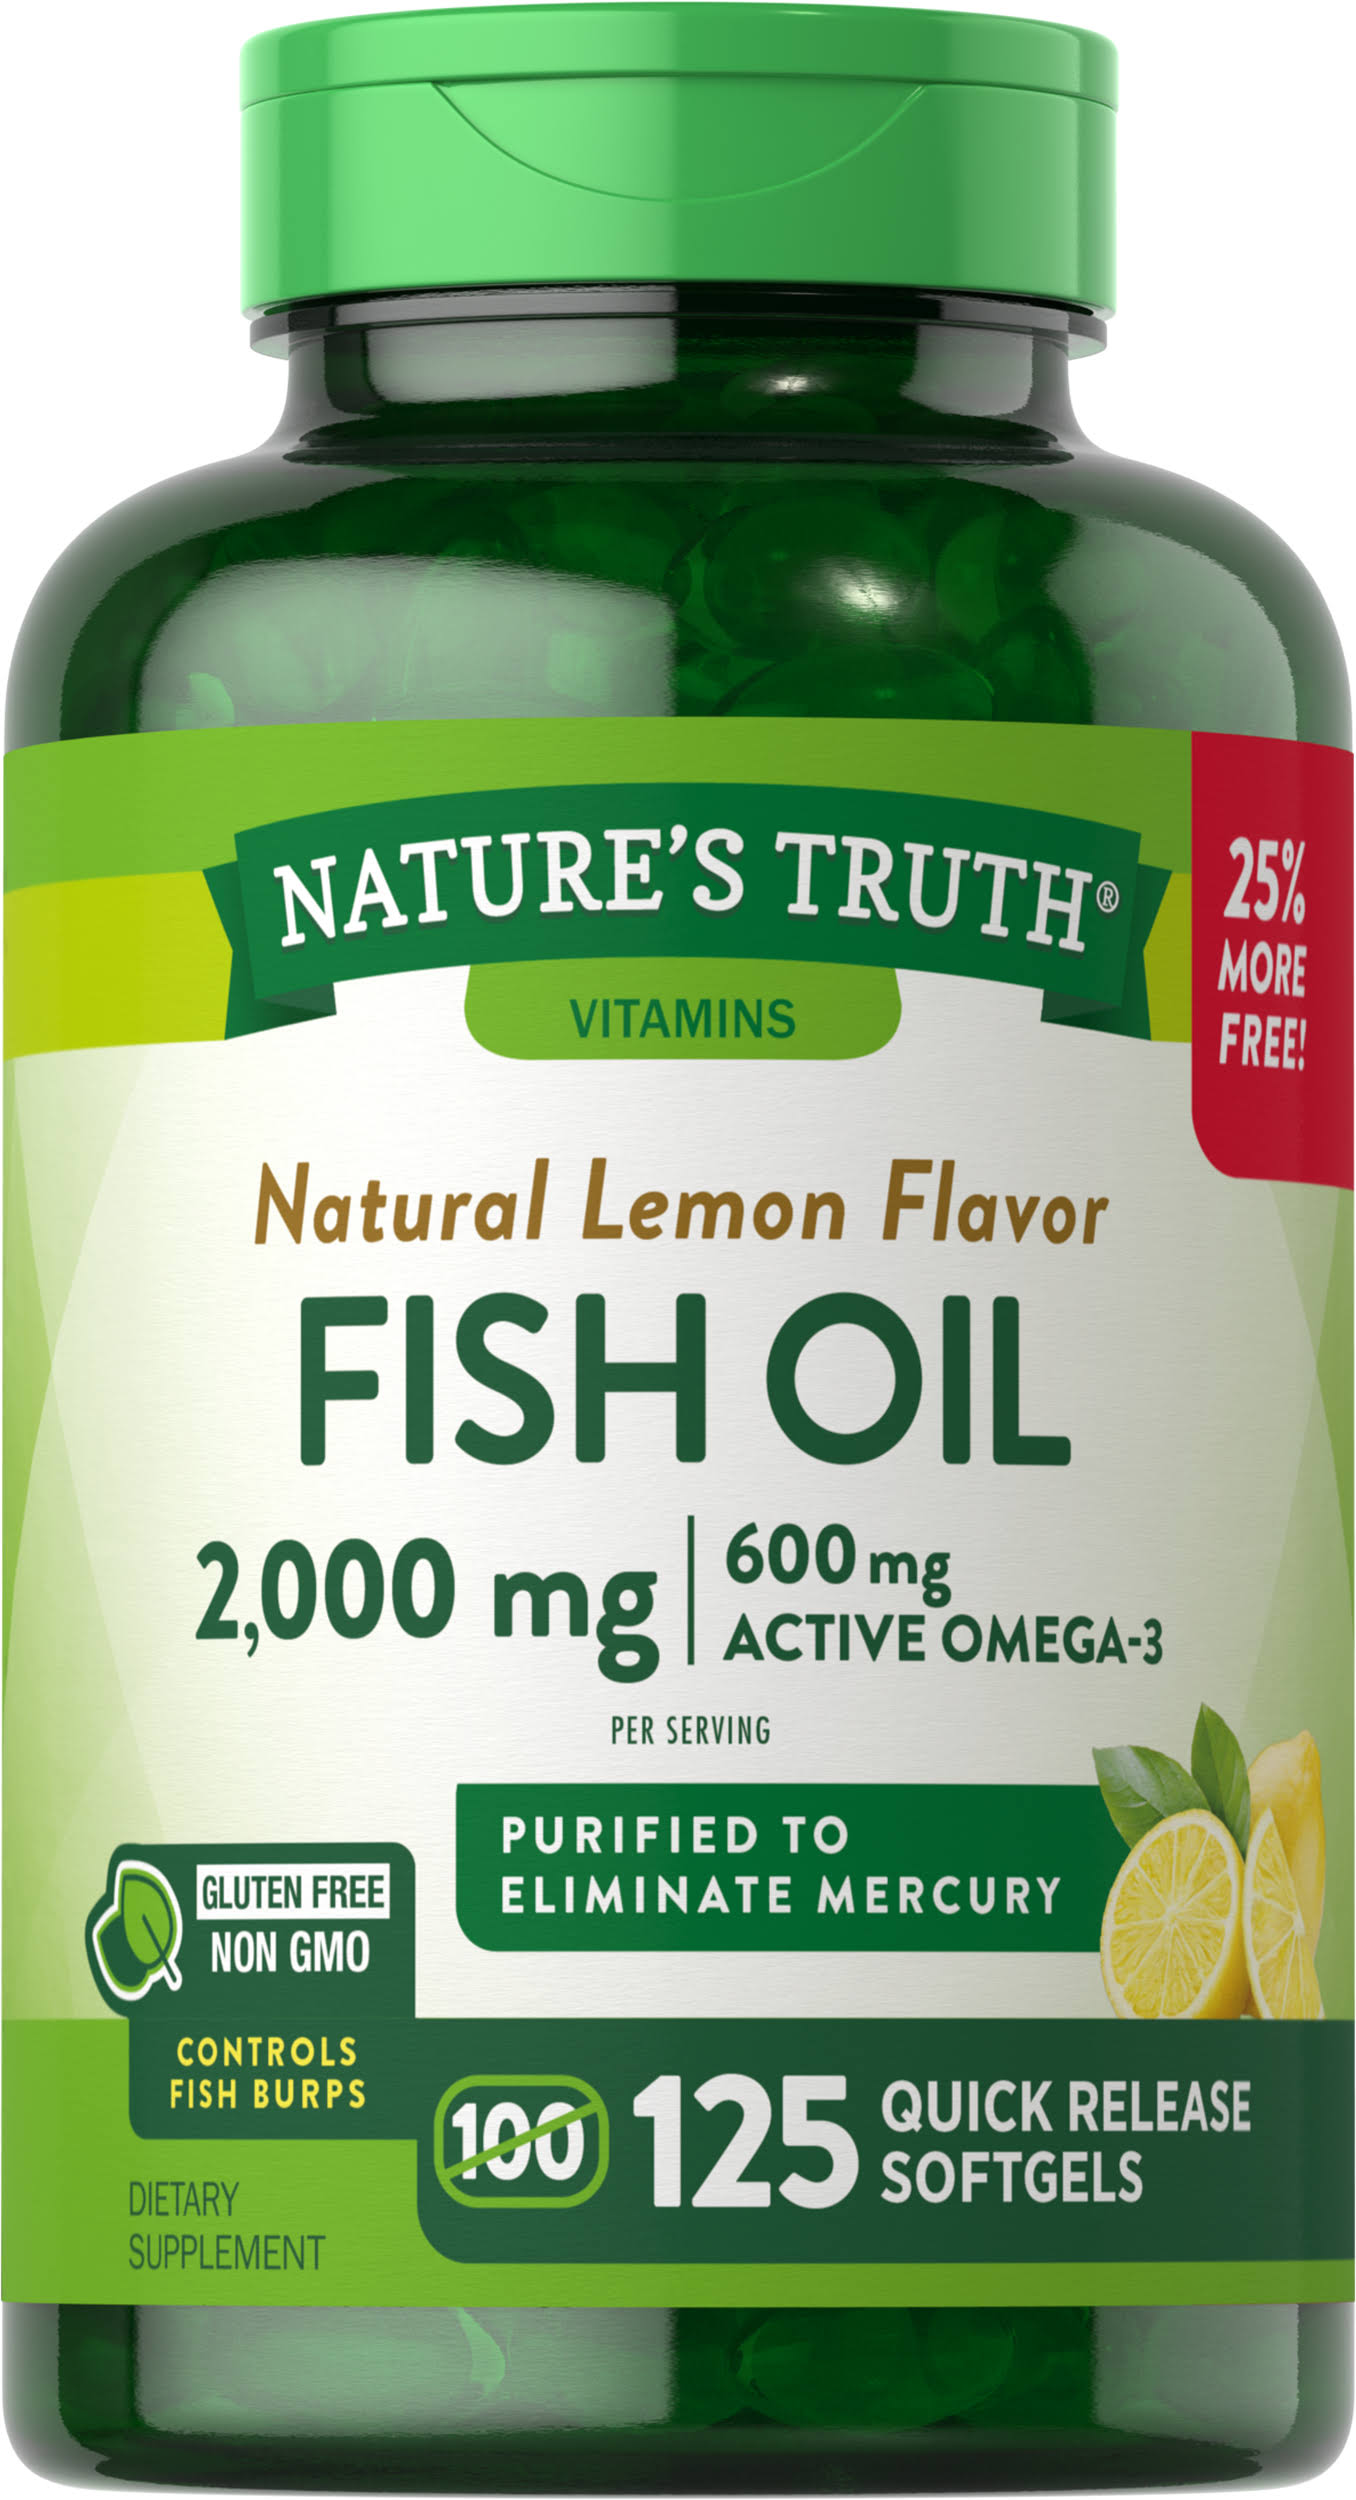 Nature's Truth Fish Oil Omega-3 Supplement - Natural Lemon Flavor, 125 Softgels